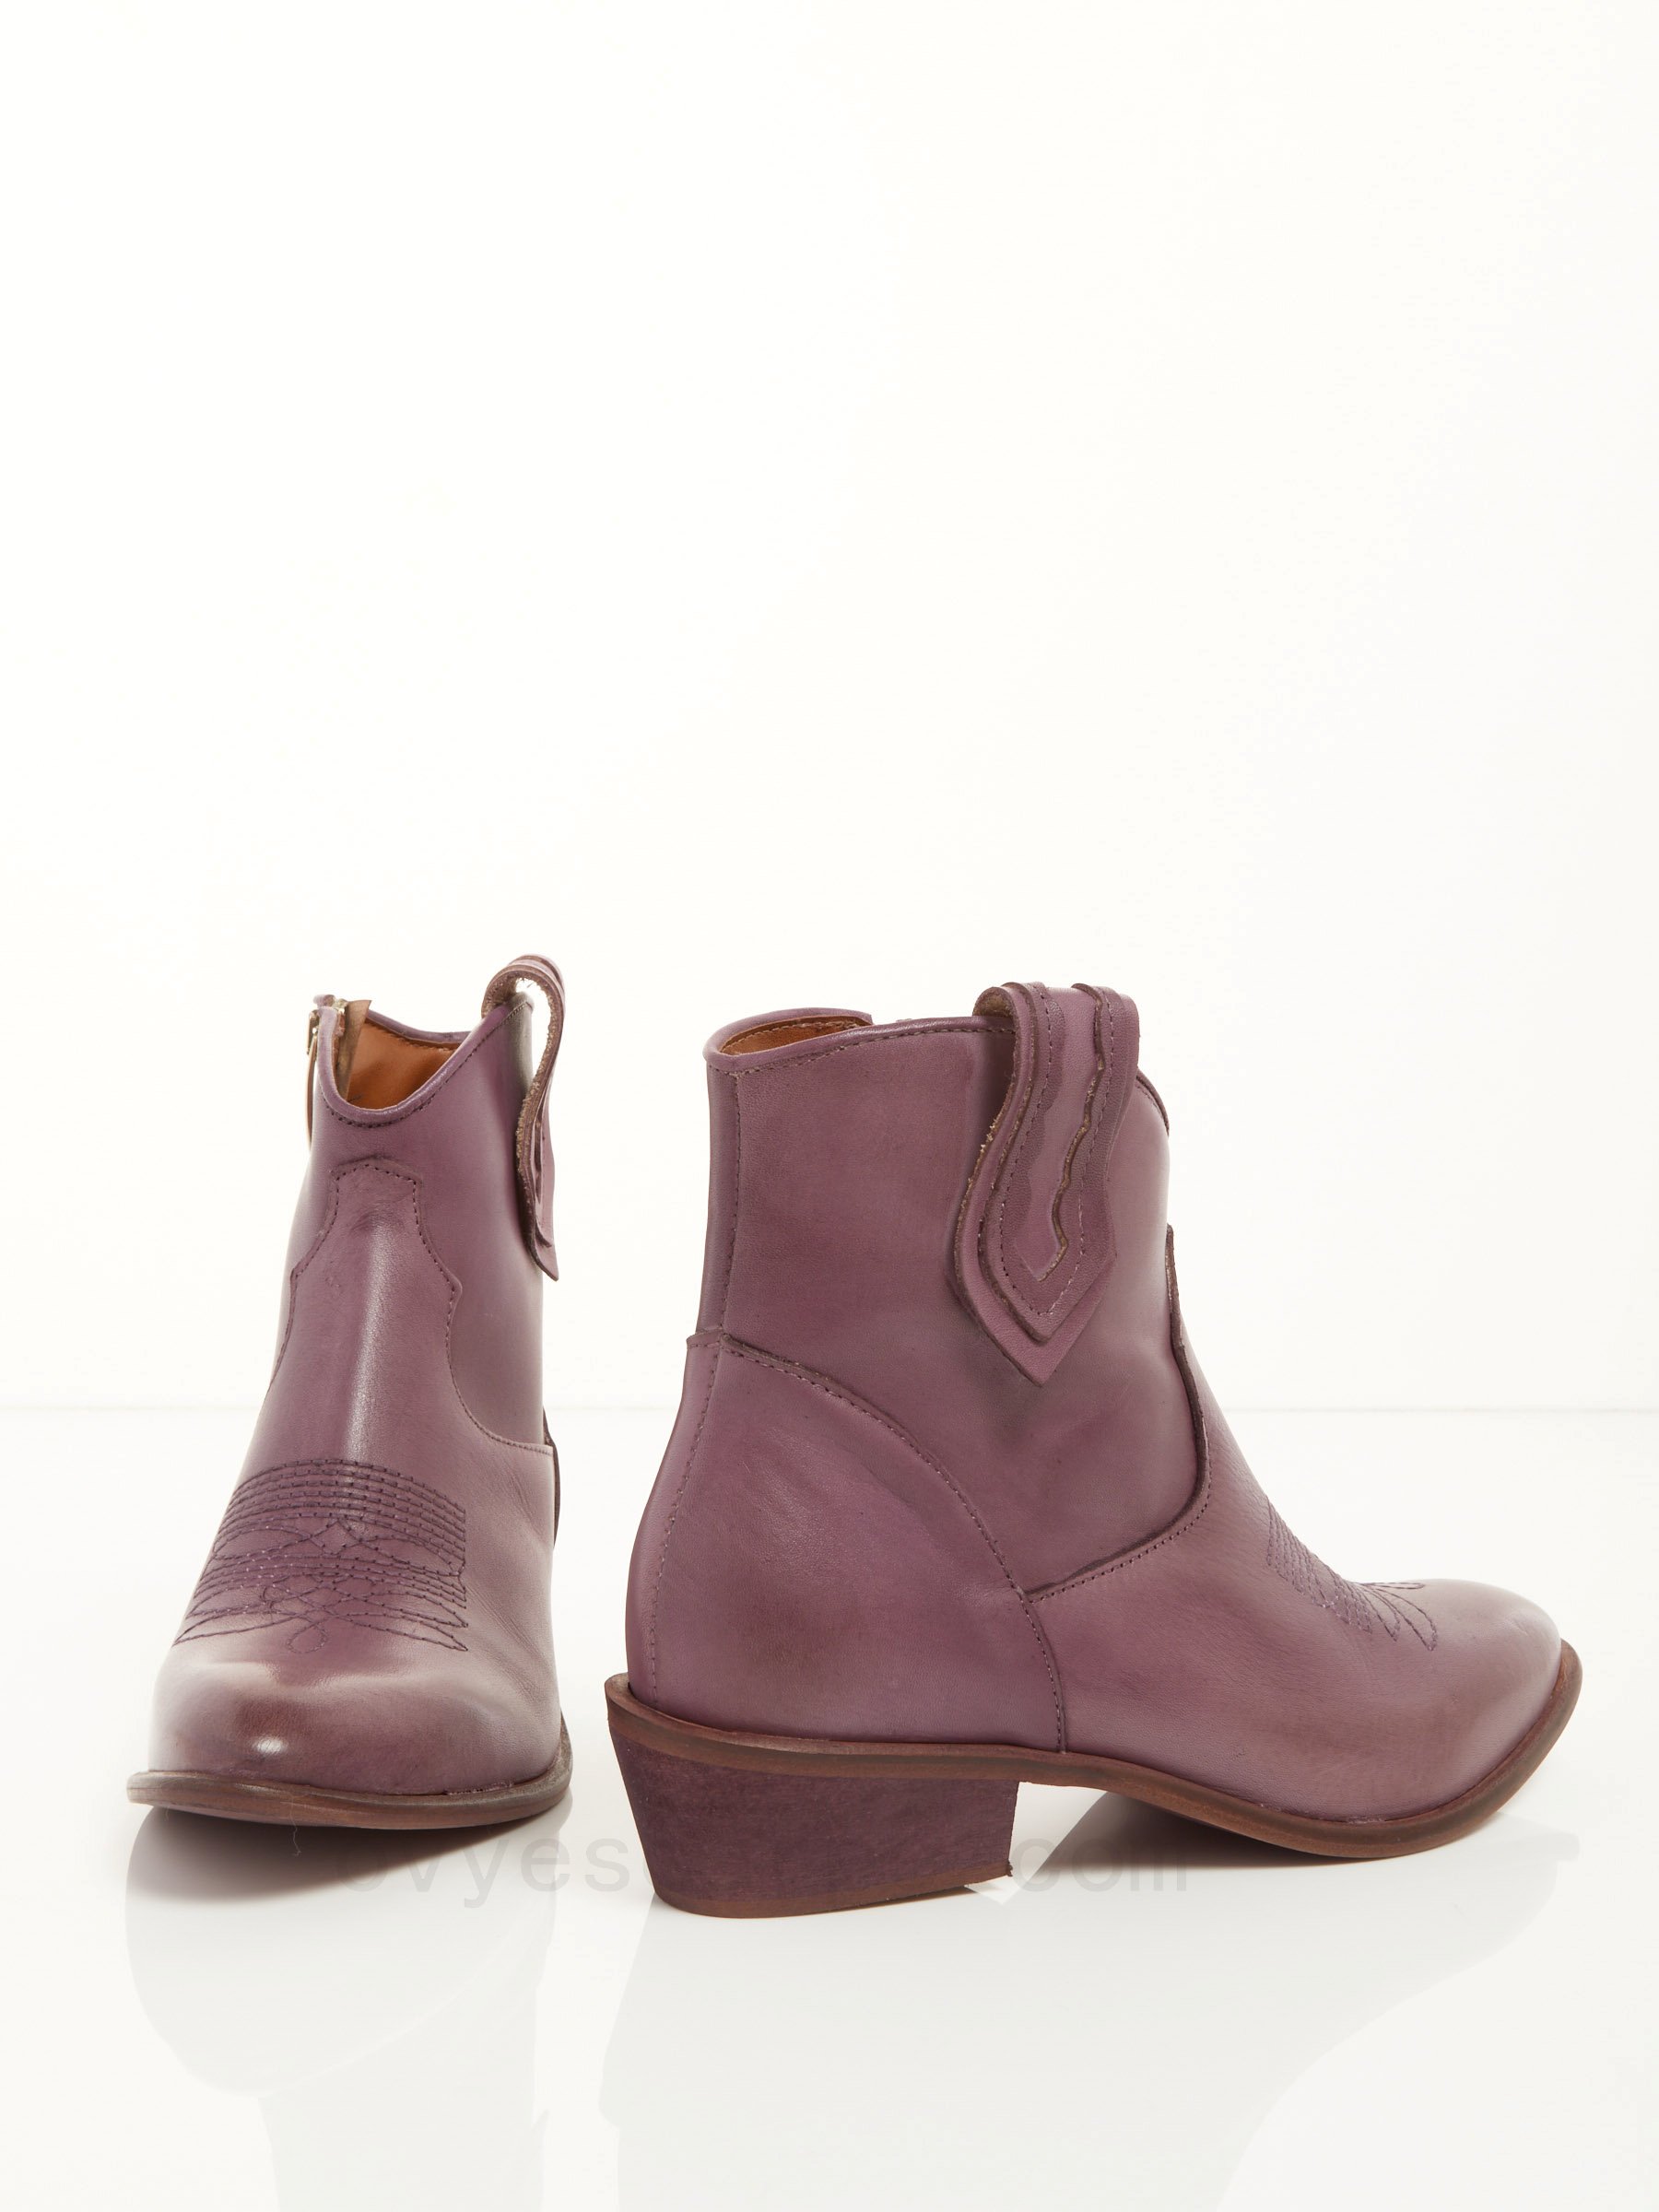 Leather Cowboy Ankle Boots F08161027-0499 Economiche